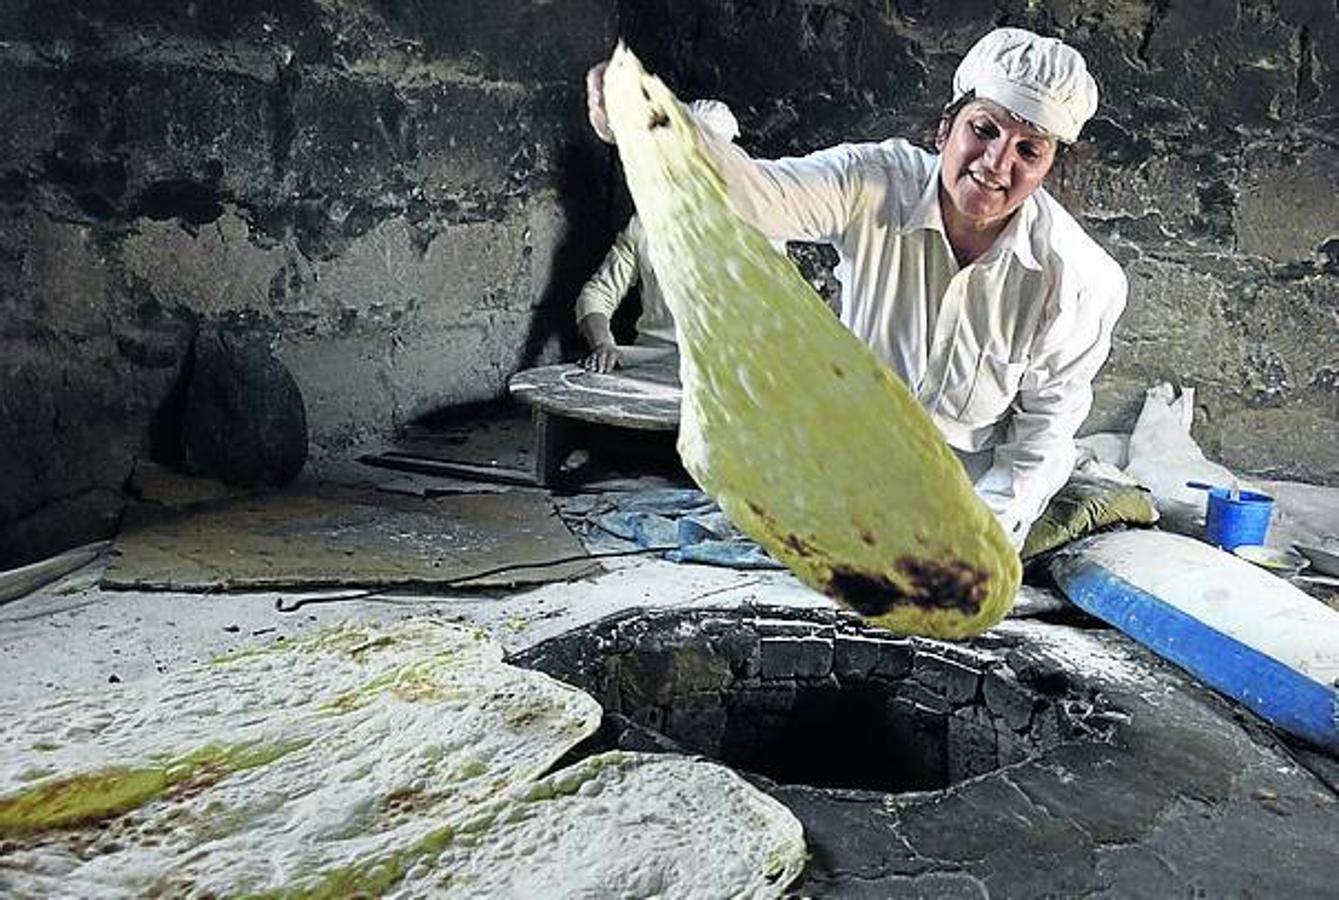 Lavash de Armenia: Es un pan tradicional delgado que forma parte de la tradición culinaria armenia. Realizado por un grupo reducido de mujeres, su preparación exige un trabajo considerable y una capacidad de coordinación, experiencia y técnicas especiales.